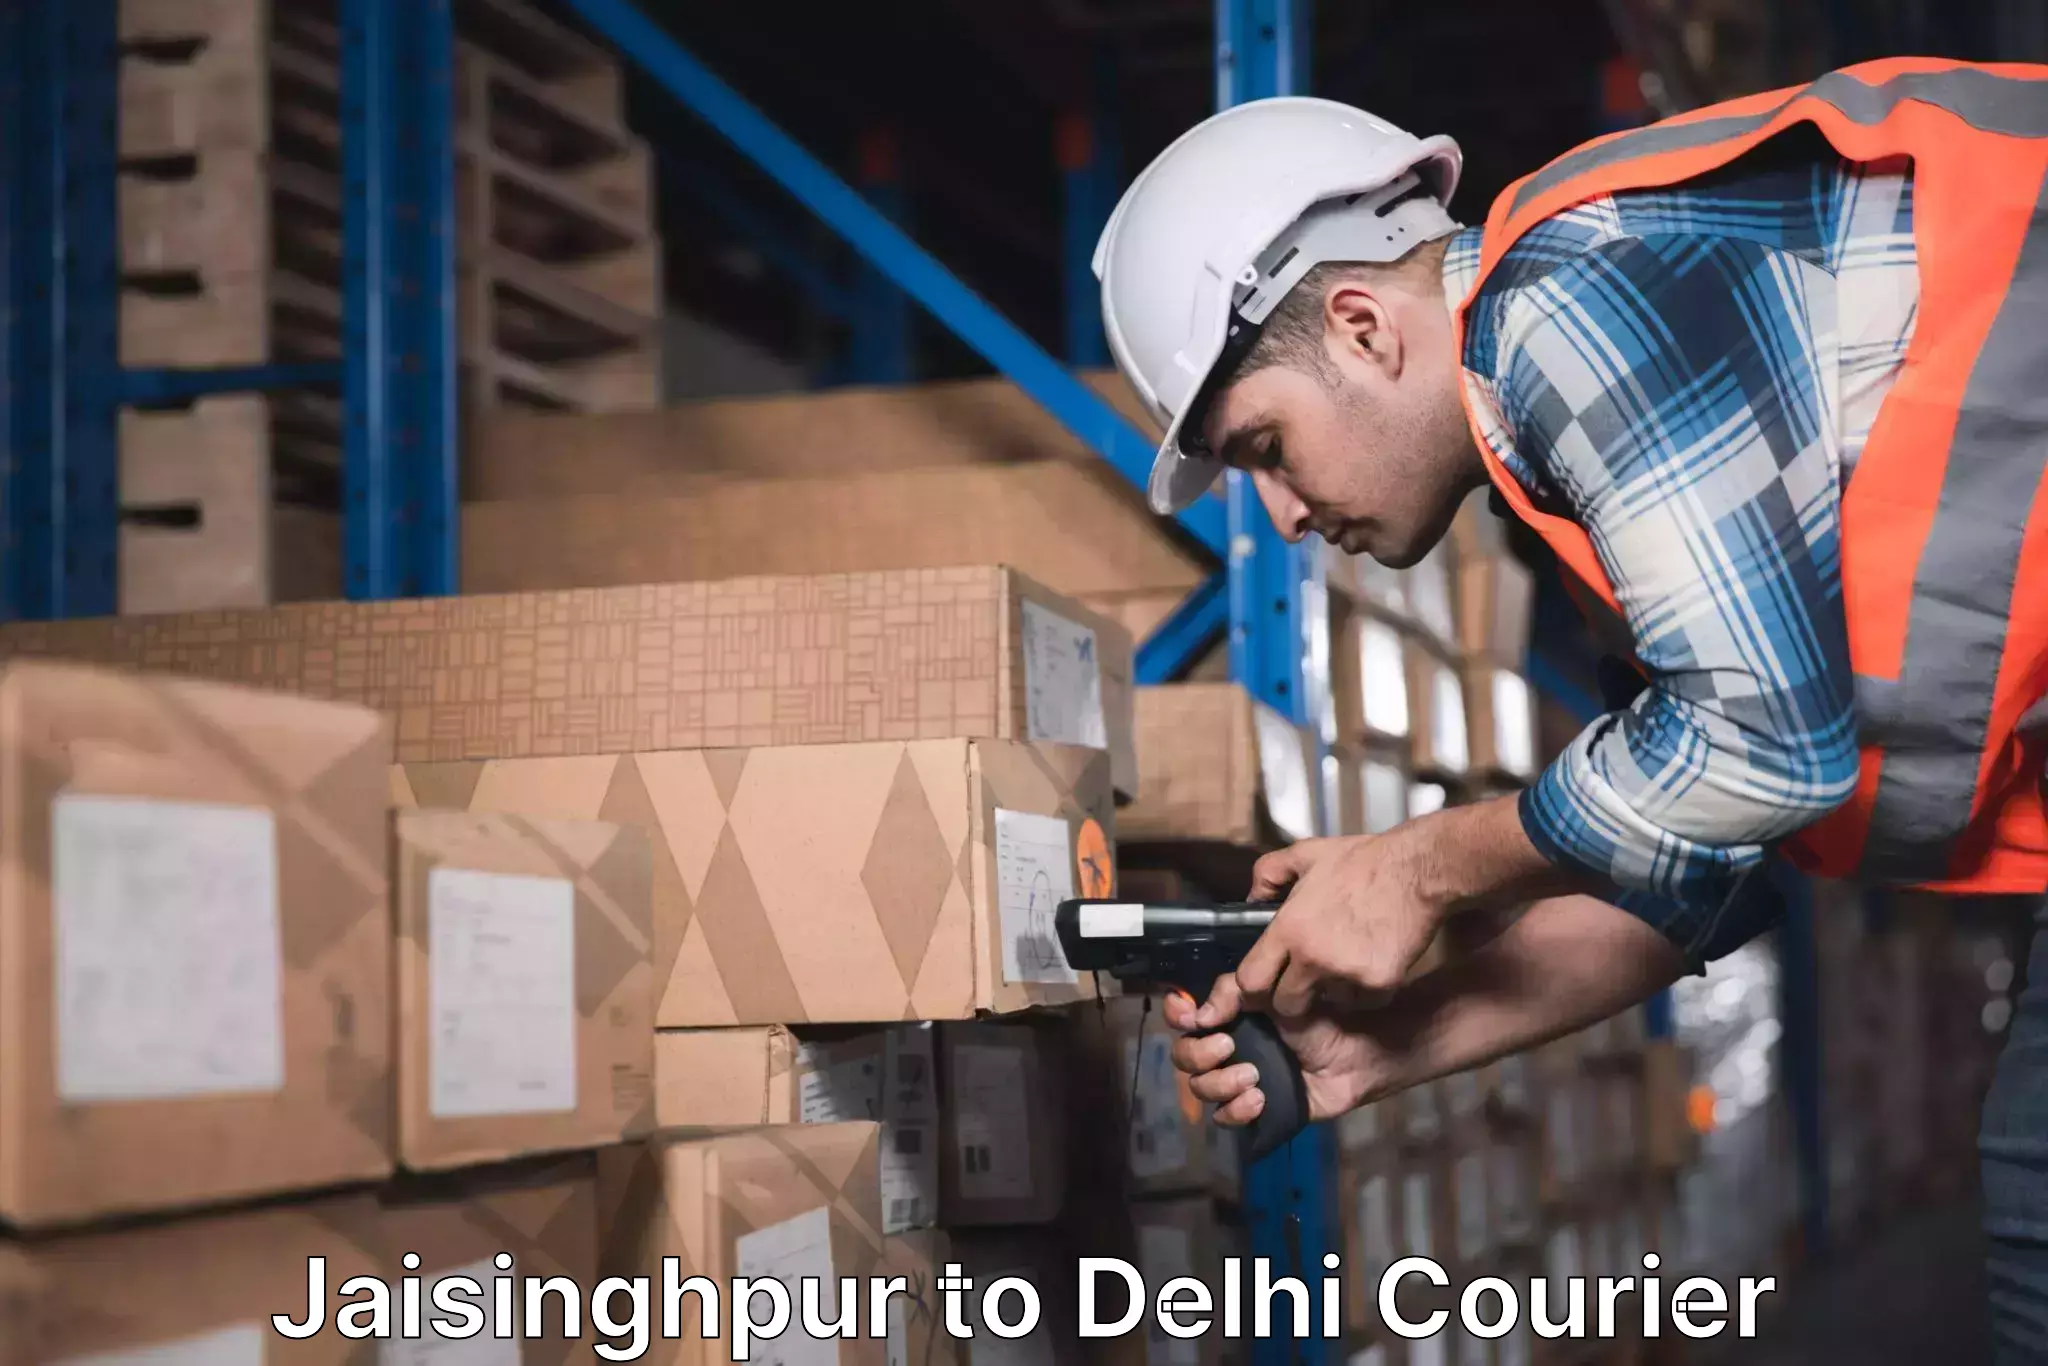 Next-day freight services Jaisinghpur to NIT Delhi